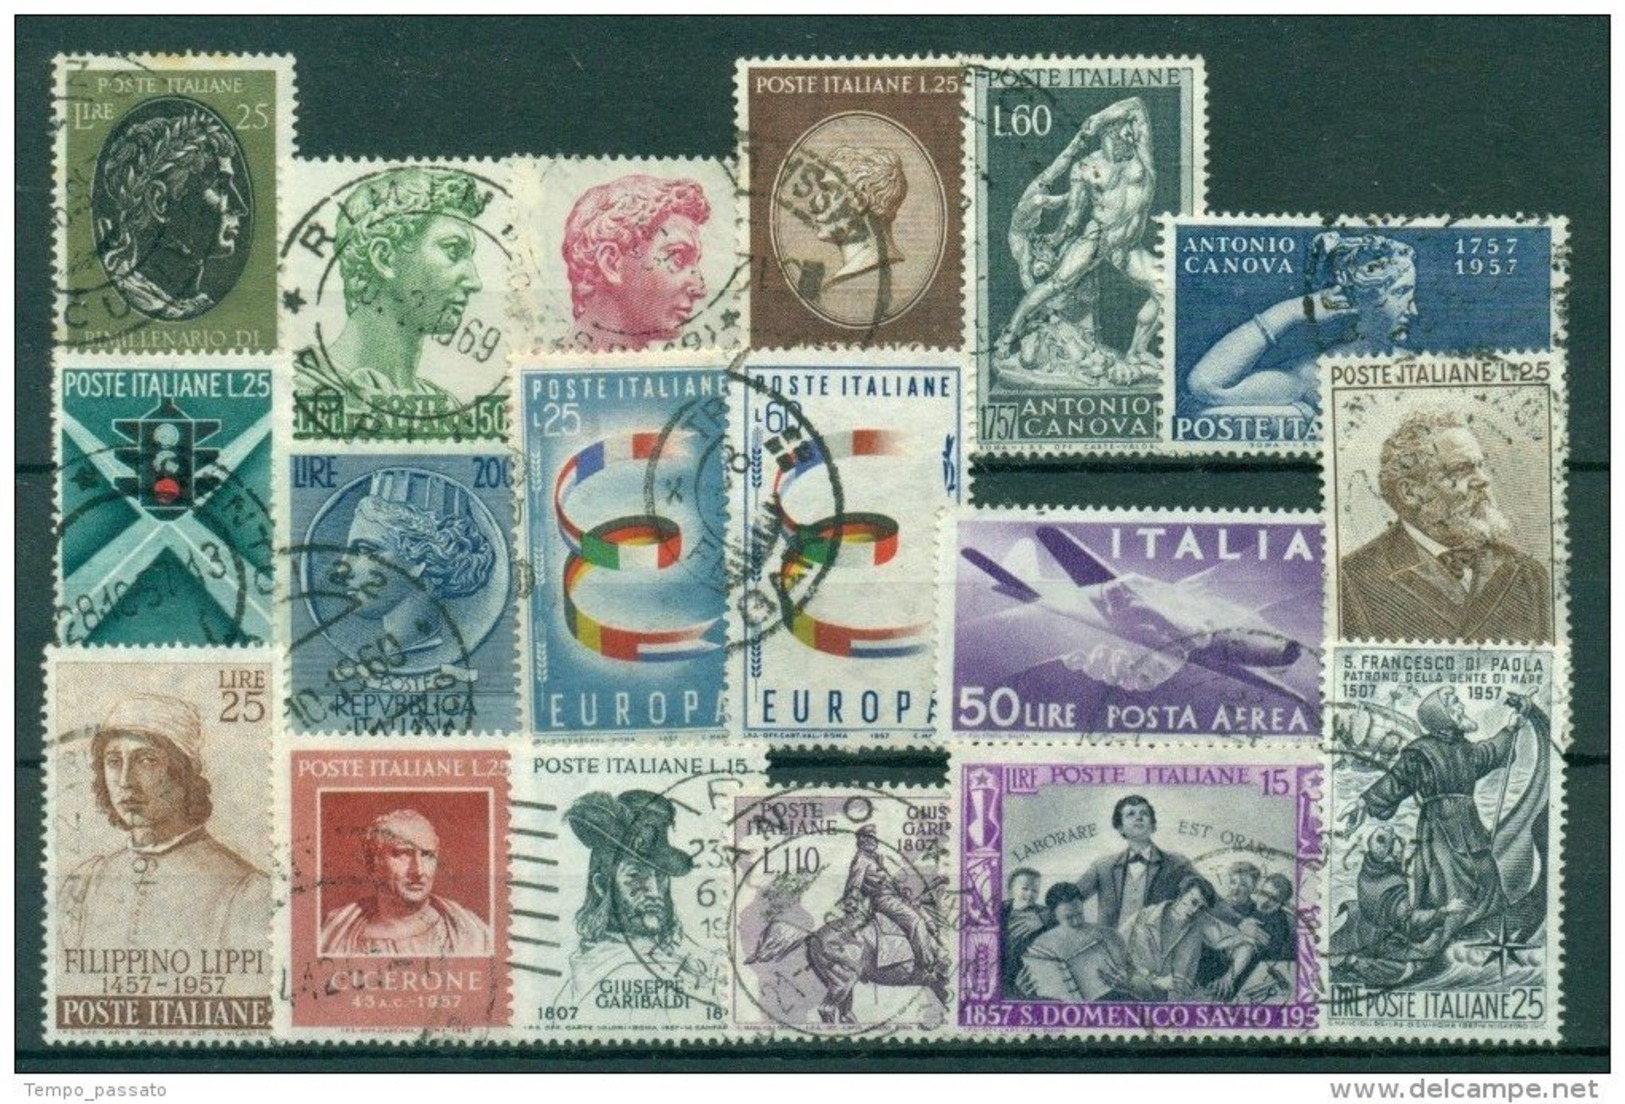 ITALIA REPUBBLICA - 9 ANNATE COMPLETE FRANCOBOLLI USATI DAL 1952 AL 1960 PERFETTI AFFARONE PREZZO PIU' BASSO SUL MERCATO